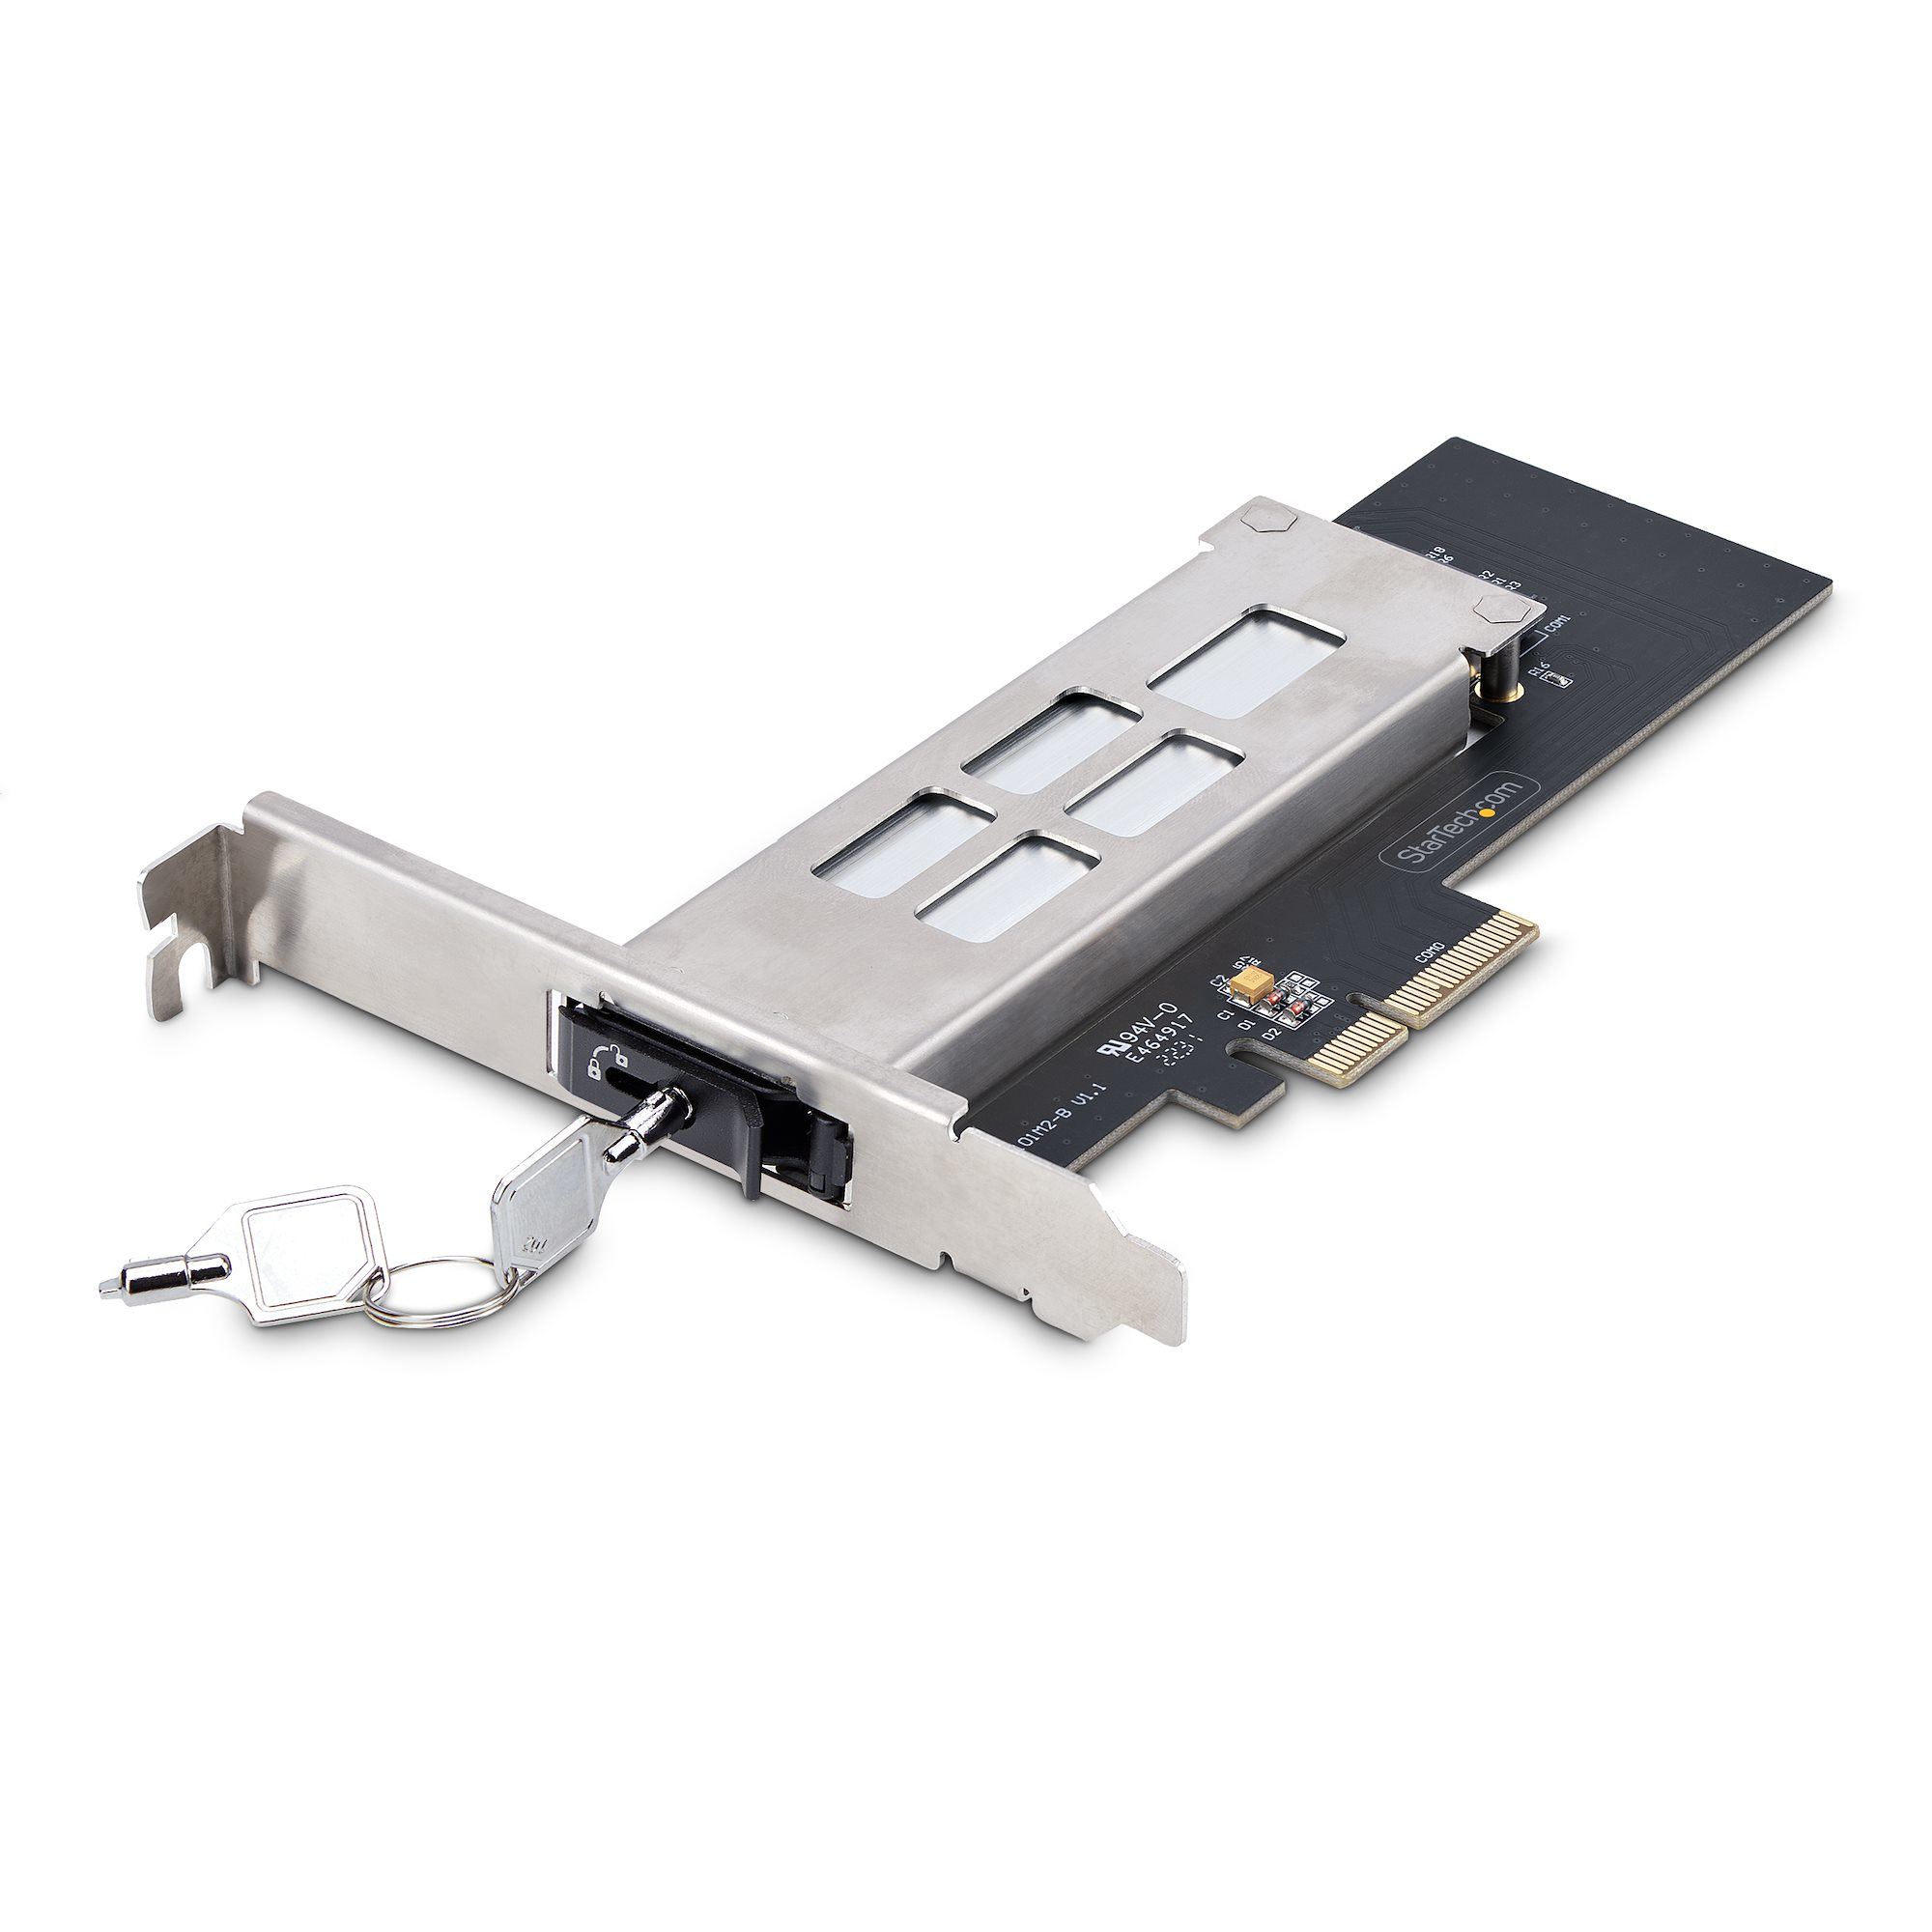 StarTech.com M.2 NVMe SSD till PCIe x4 flyttbart ställ/bakplan med avtagbart fack för PCI Express-utbyggnadskortplats, verktygslös installation, PCIe 4.0/3.0 hot-swap-enhetsfack, nyckellås - 2 nycklar ingår